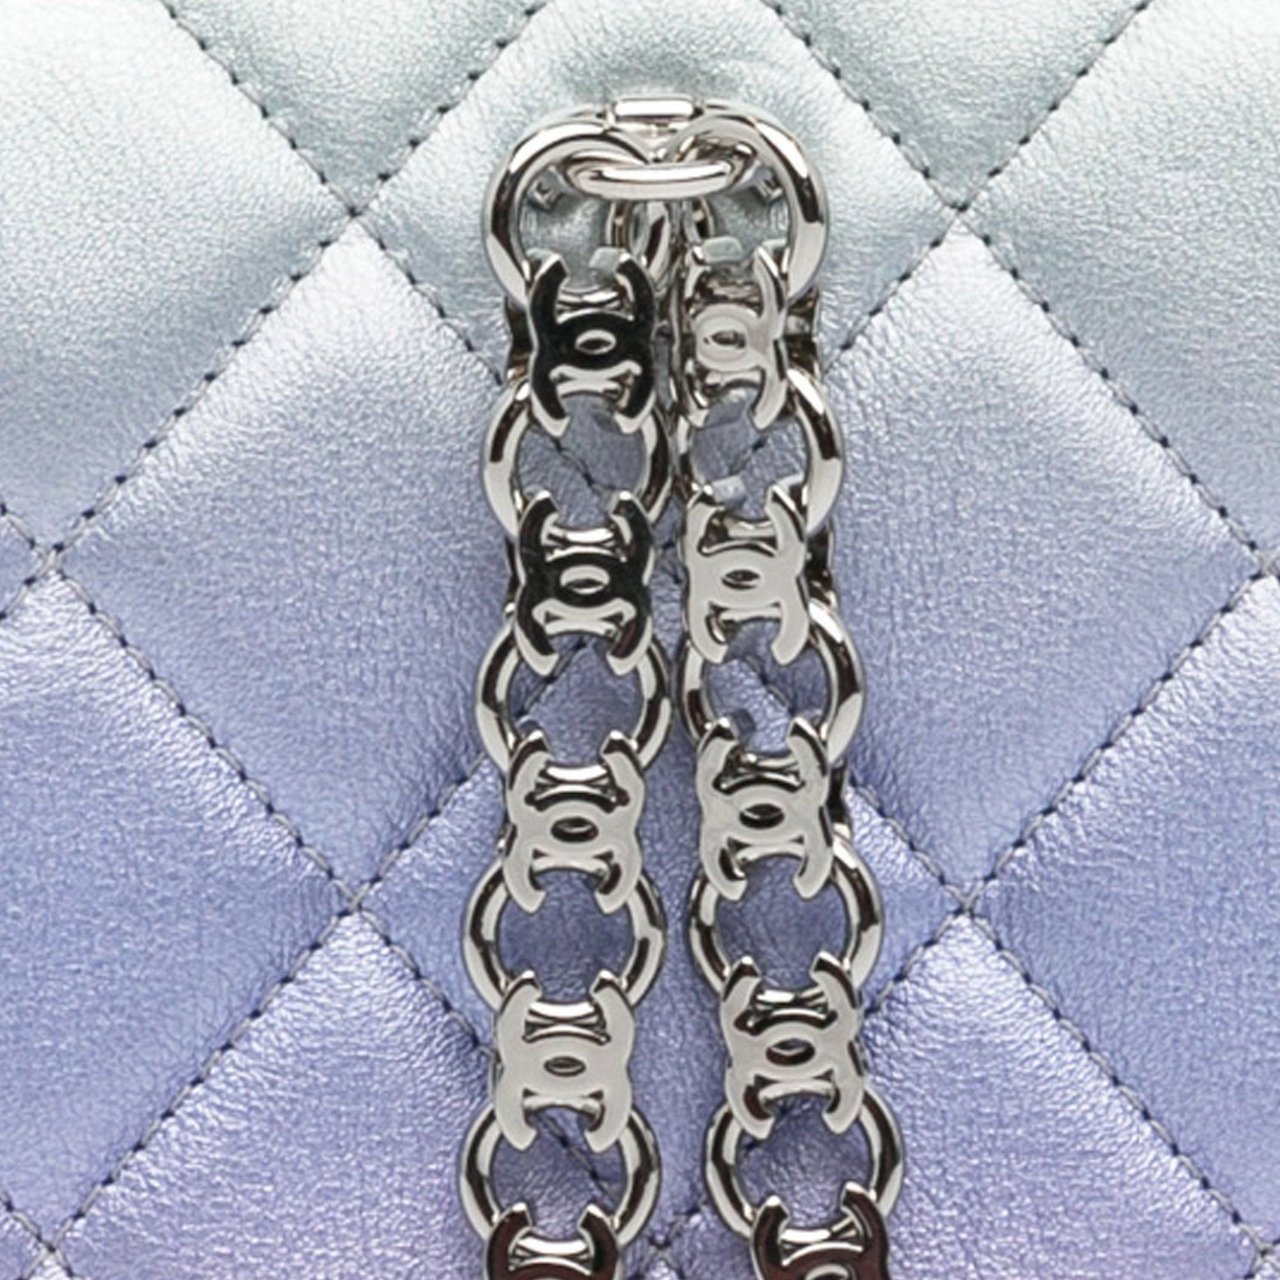 Chanel Iridescent Lambskin Wristlet Clutch Bag Groen